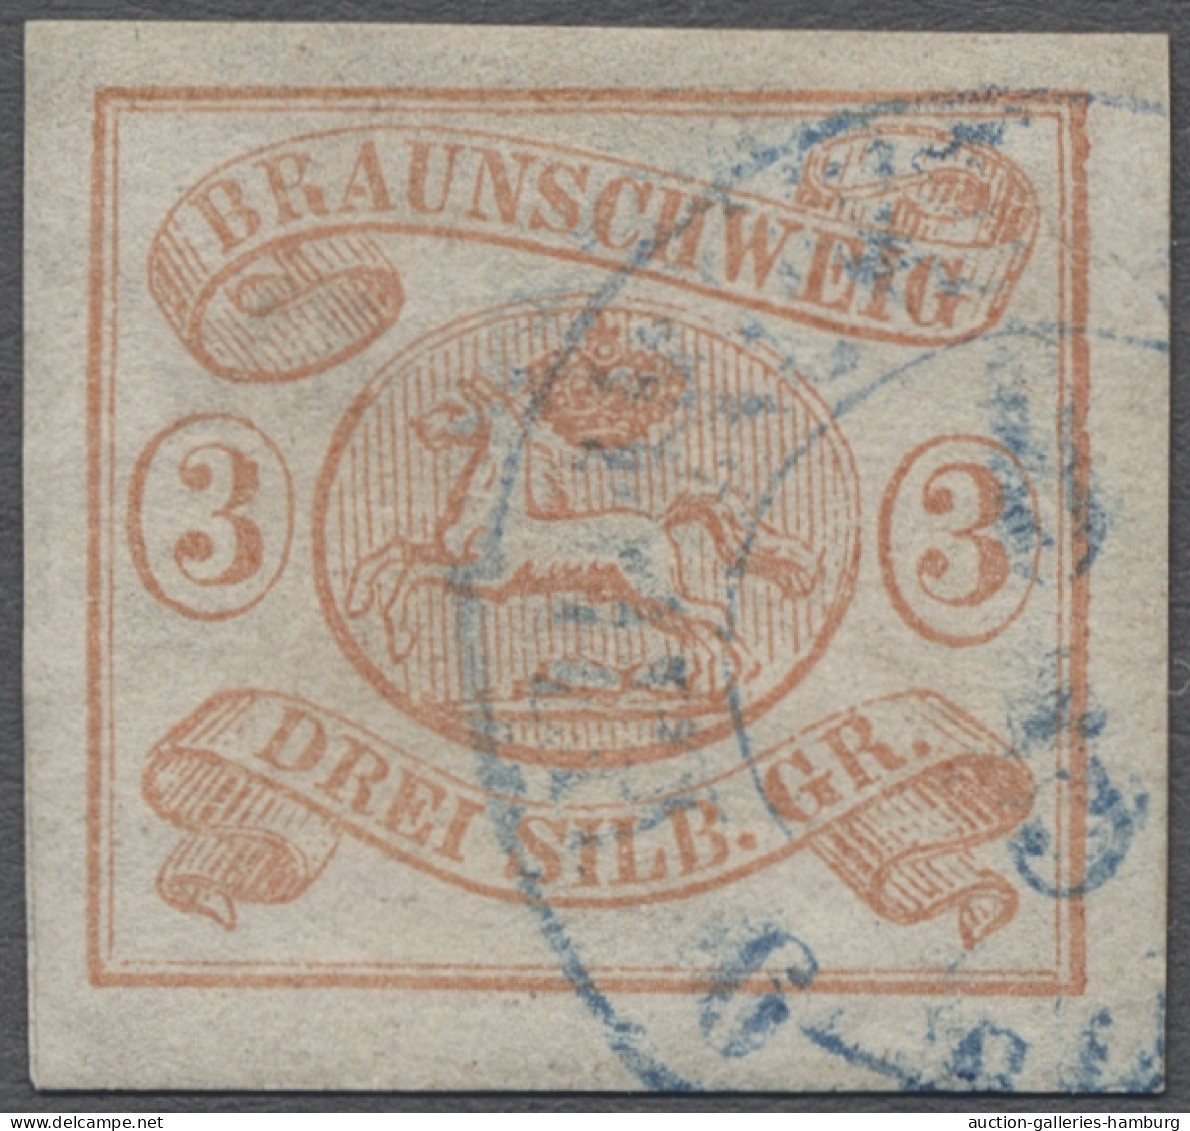 O Braunschweig - Marken Und Briefe: 1852, Freimarke 3 Sgr. Lebhaftorangerot Entwer - Brunswick